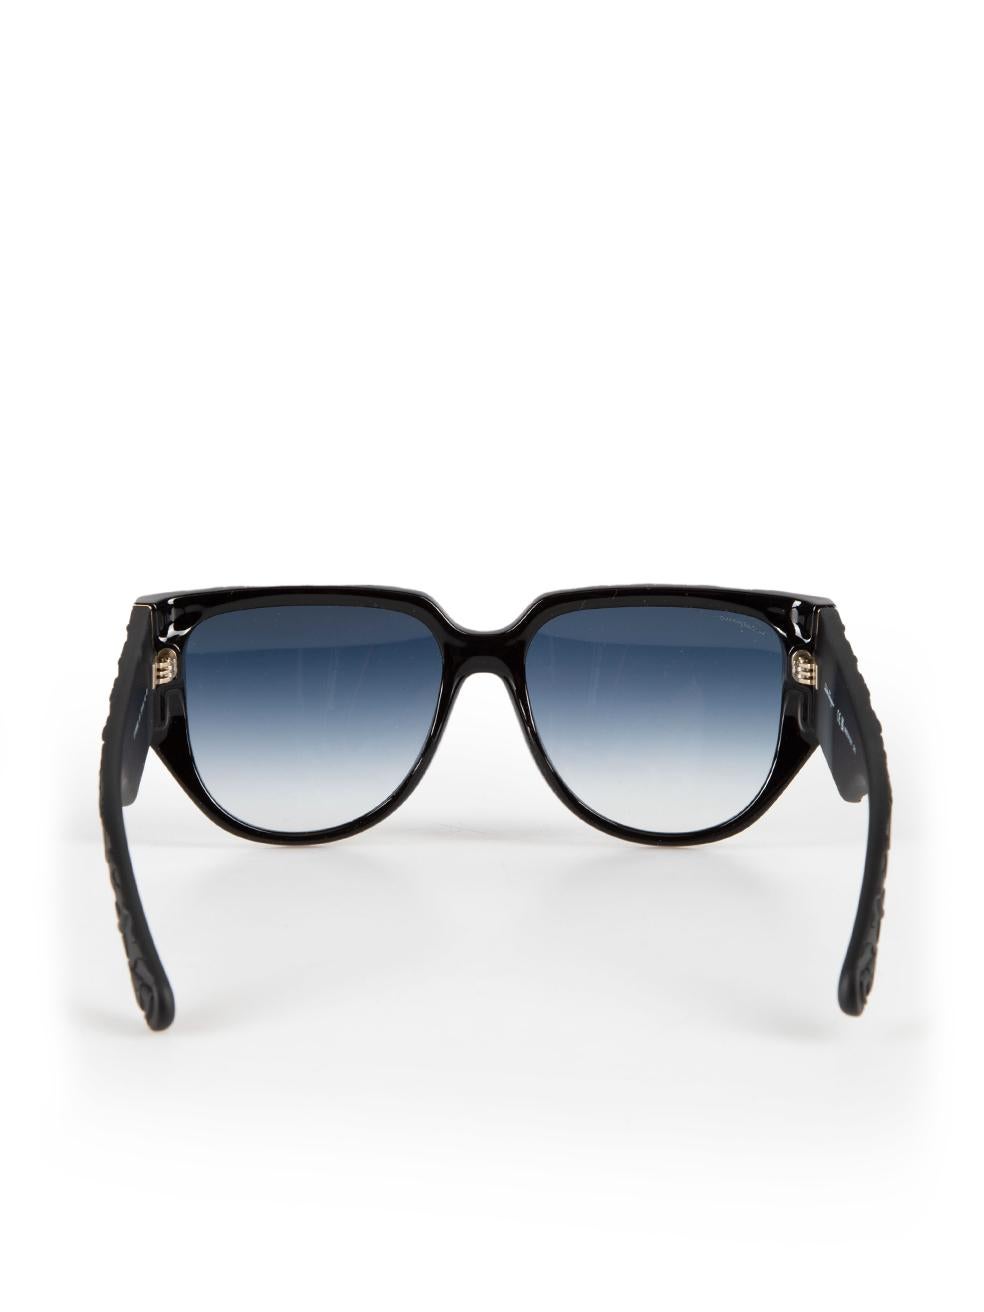 Salvatore Ferragamo Black Browline Sunglasses In New Condition For Sale In London, GB